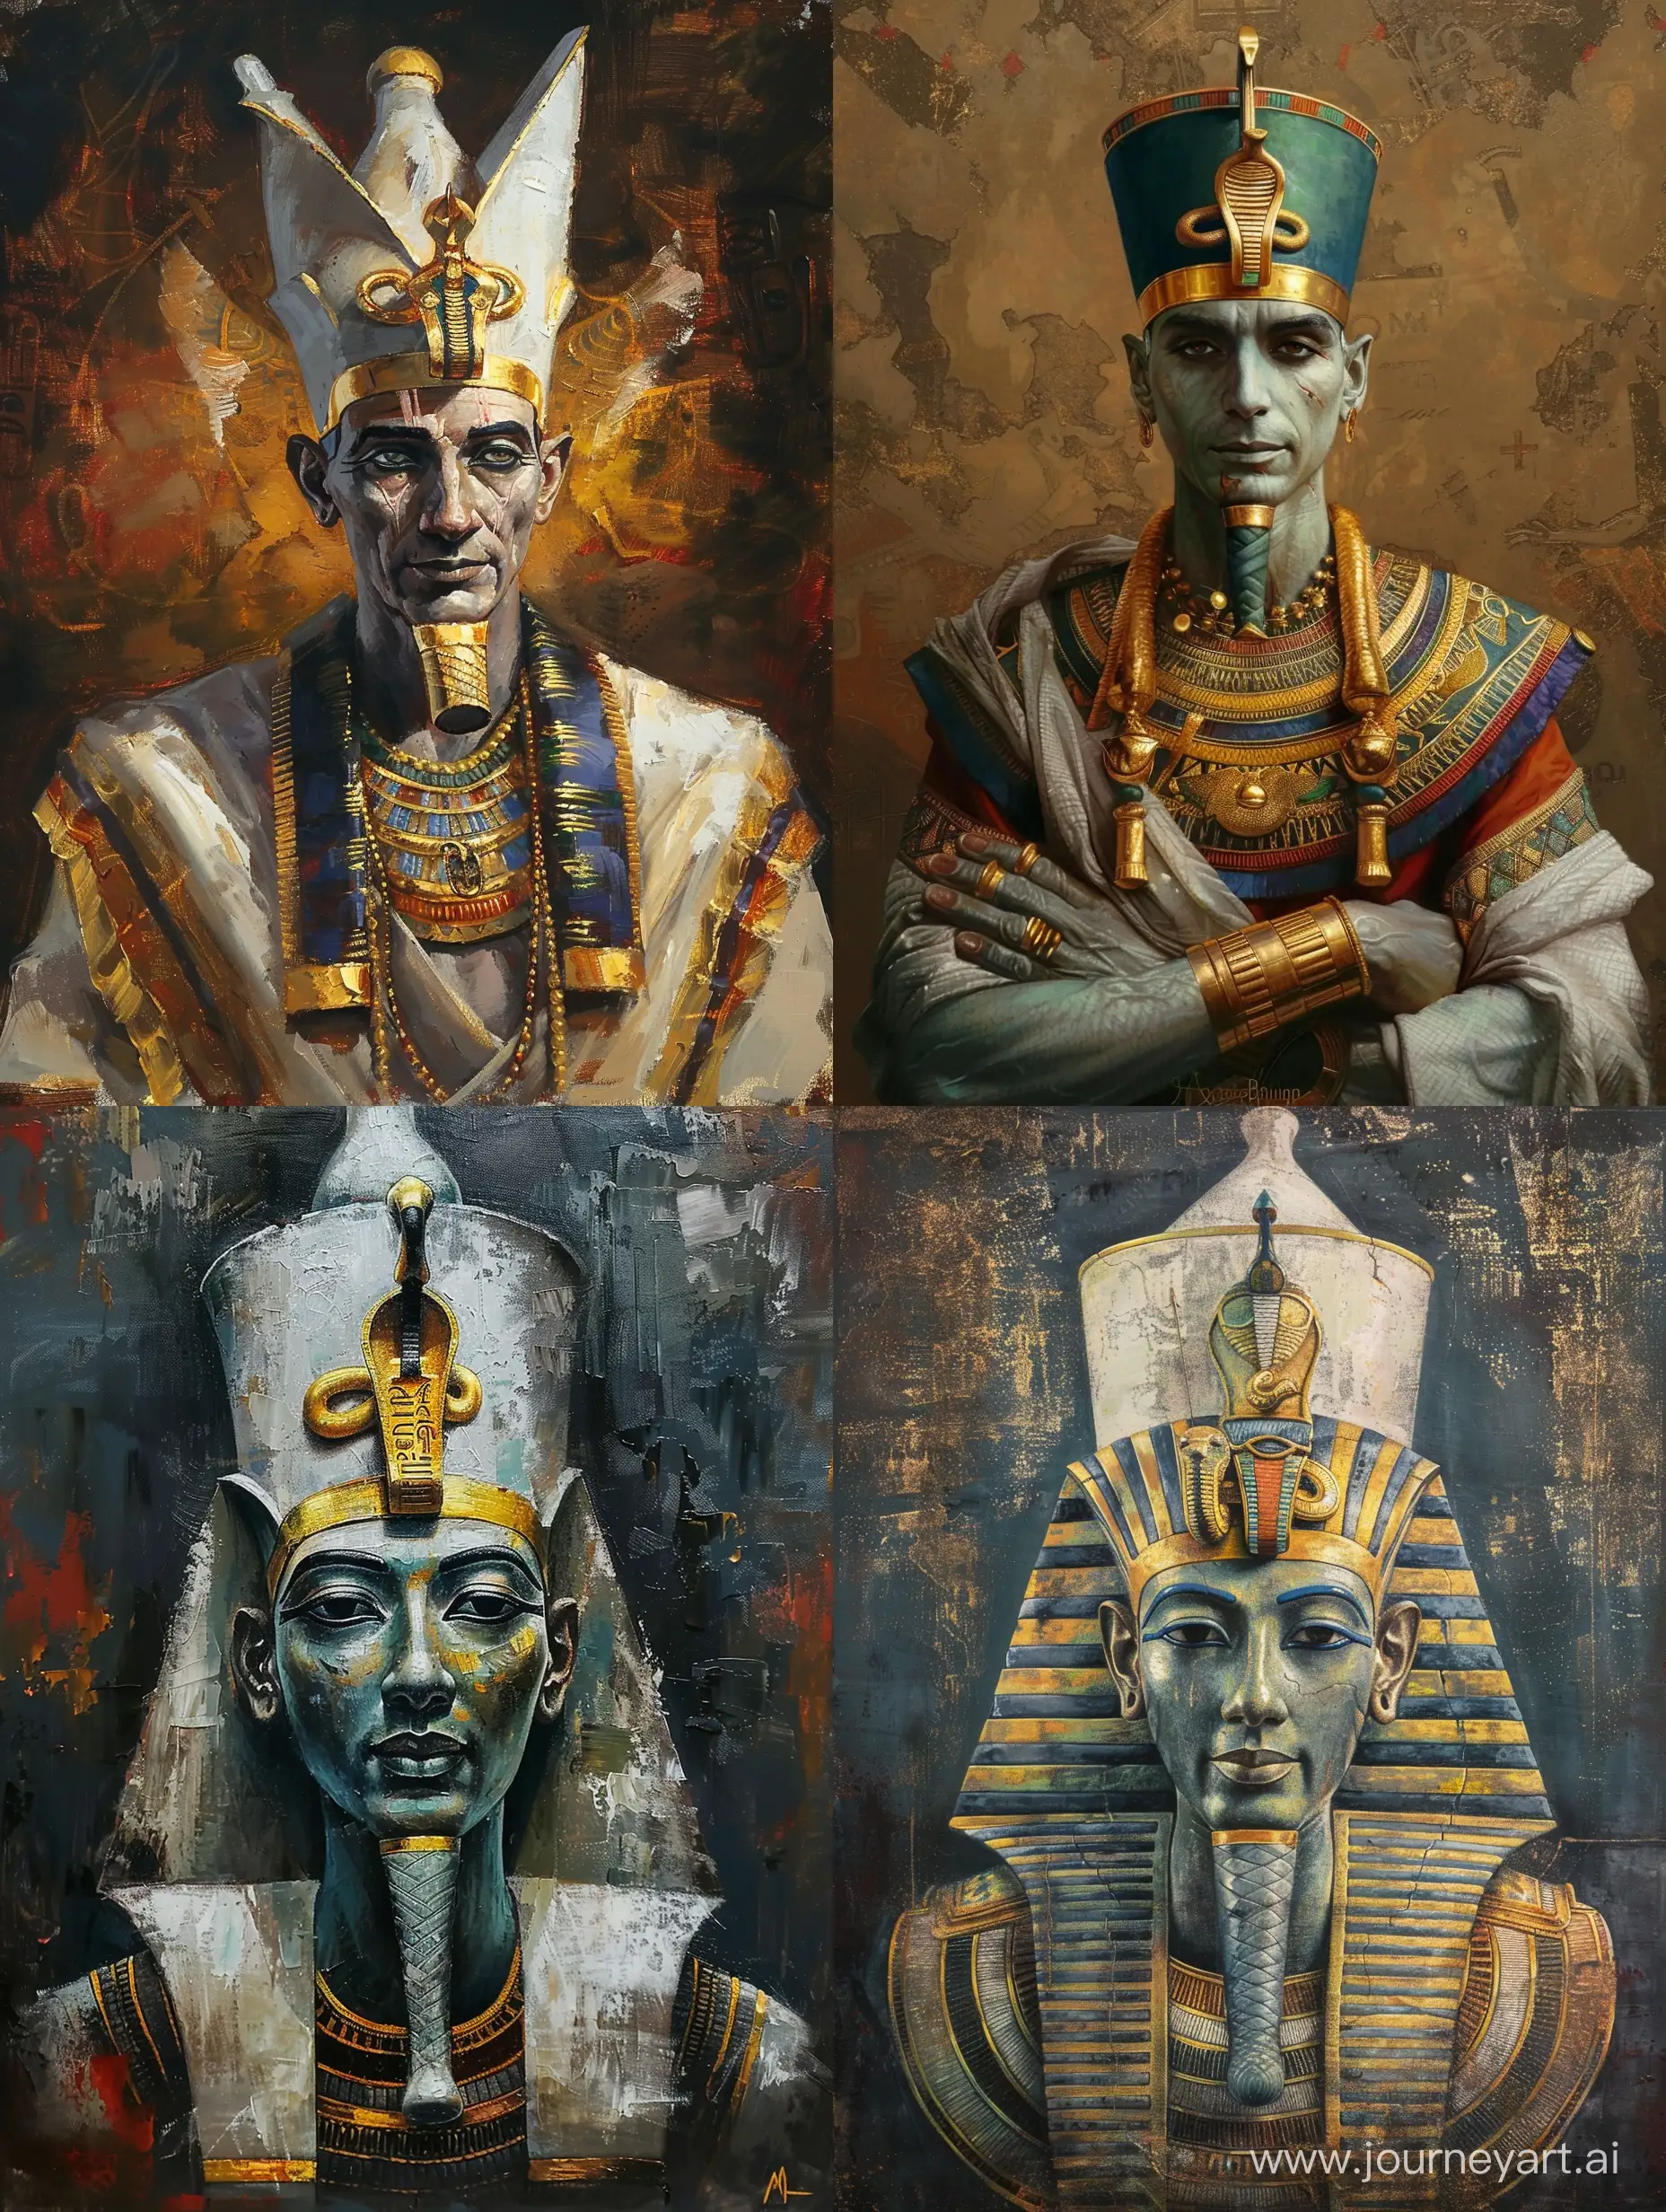 древнеегипетский бог Осирис, золотые украшения, портрет по пояс, масляная живопись, детальная проработка, стилизация, высокое качество, атмосферно